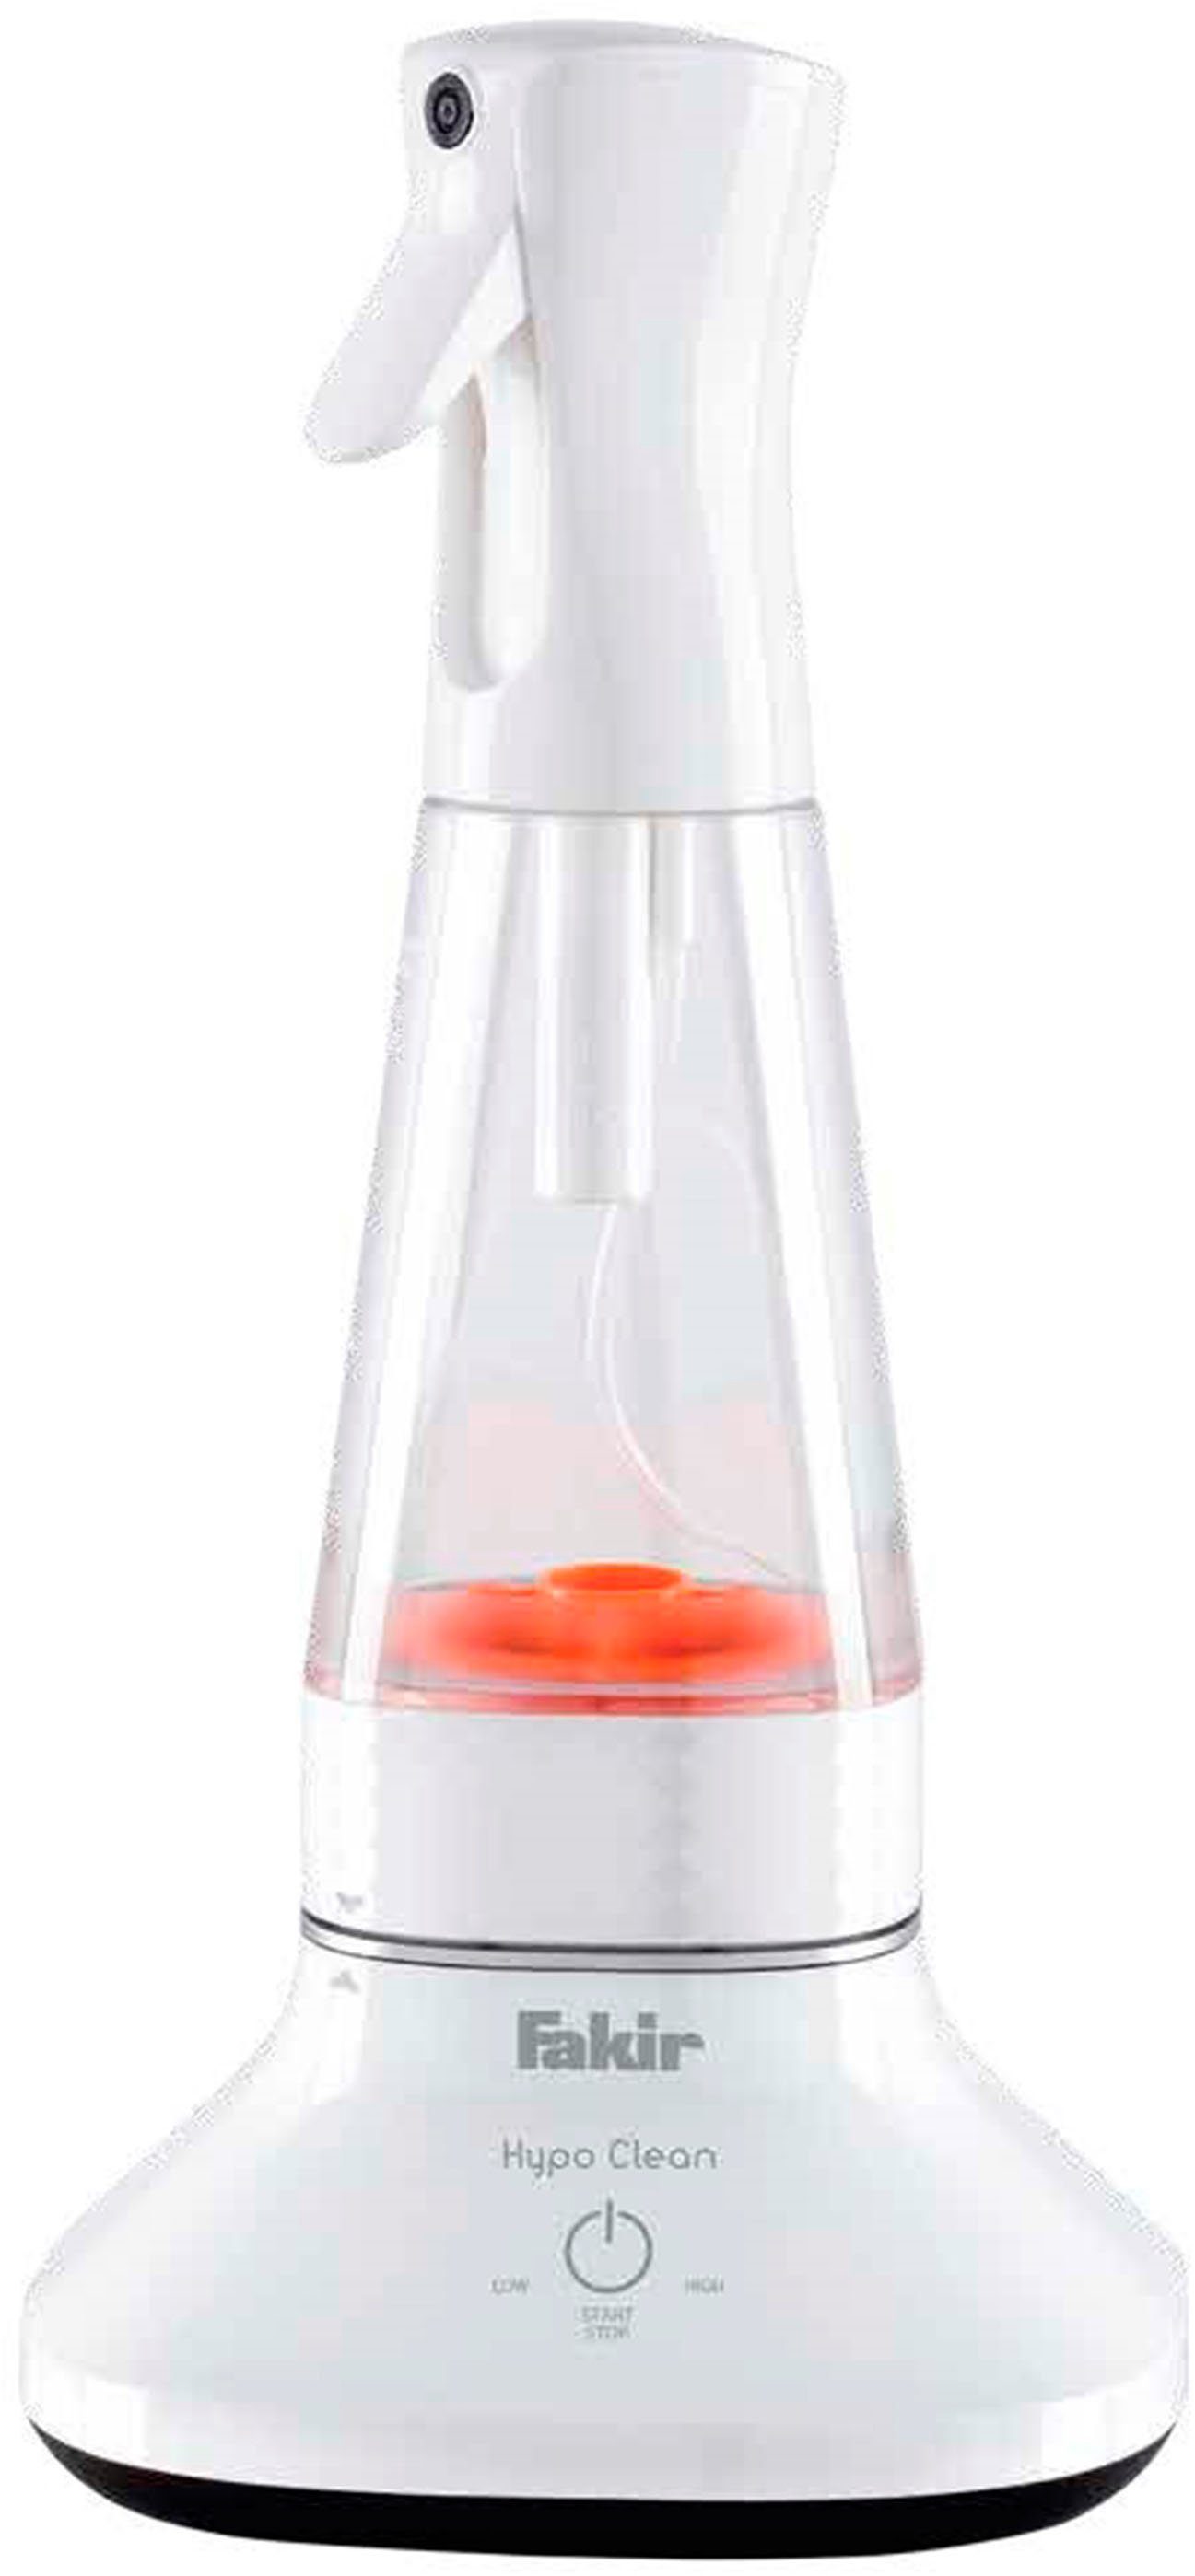 Clean, FAKIR Hypo großes ml) (400 Fassungsvermögen Wassersterilisiergerät